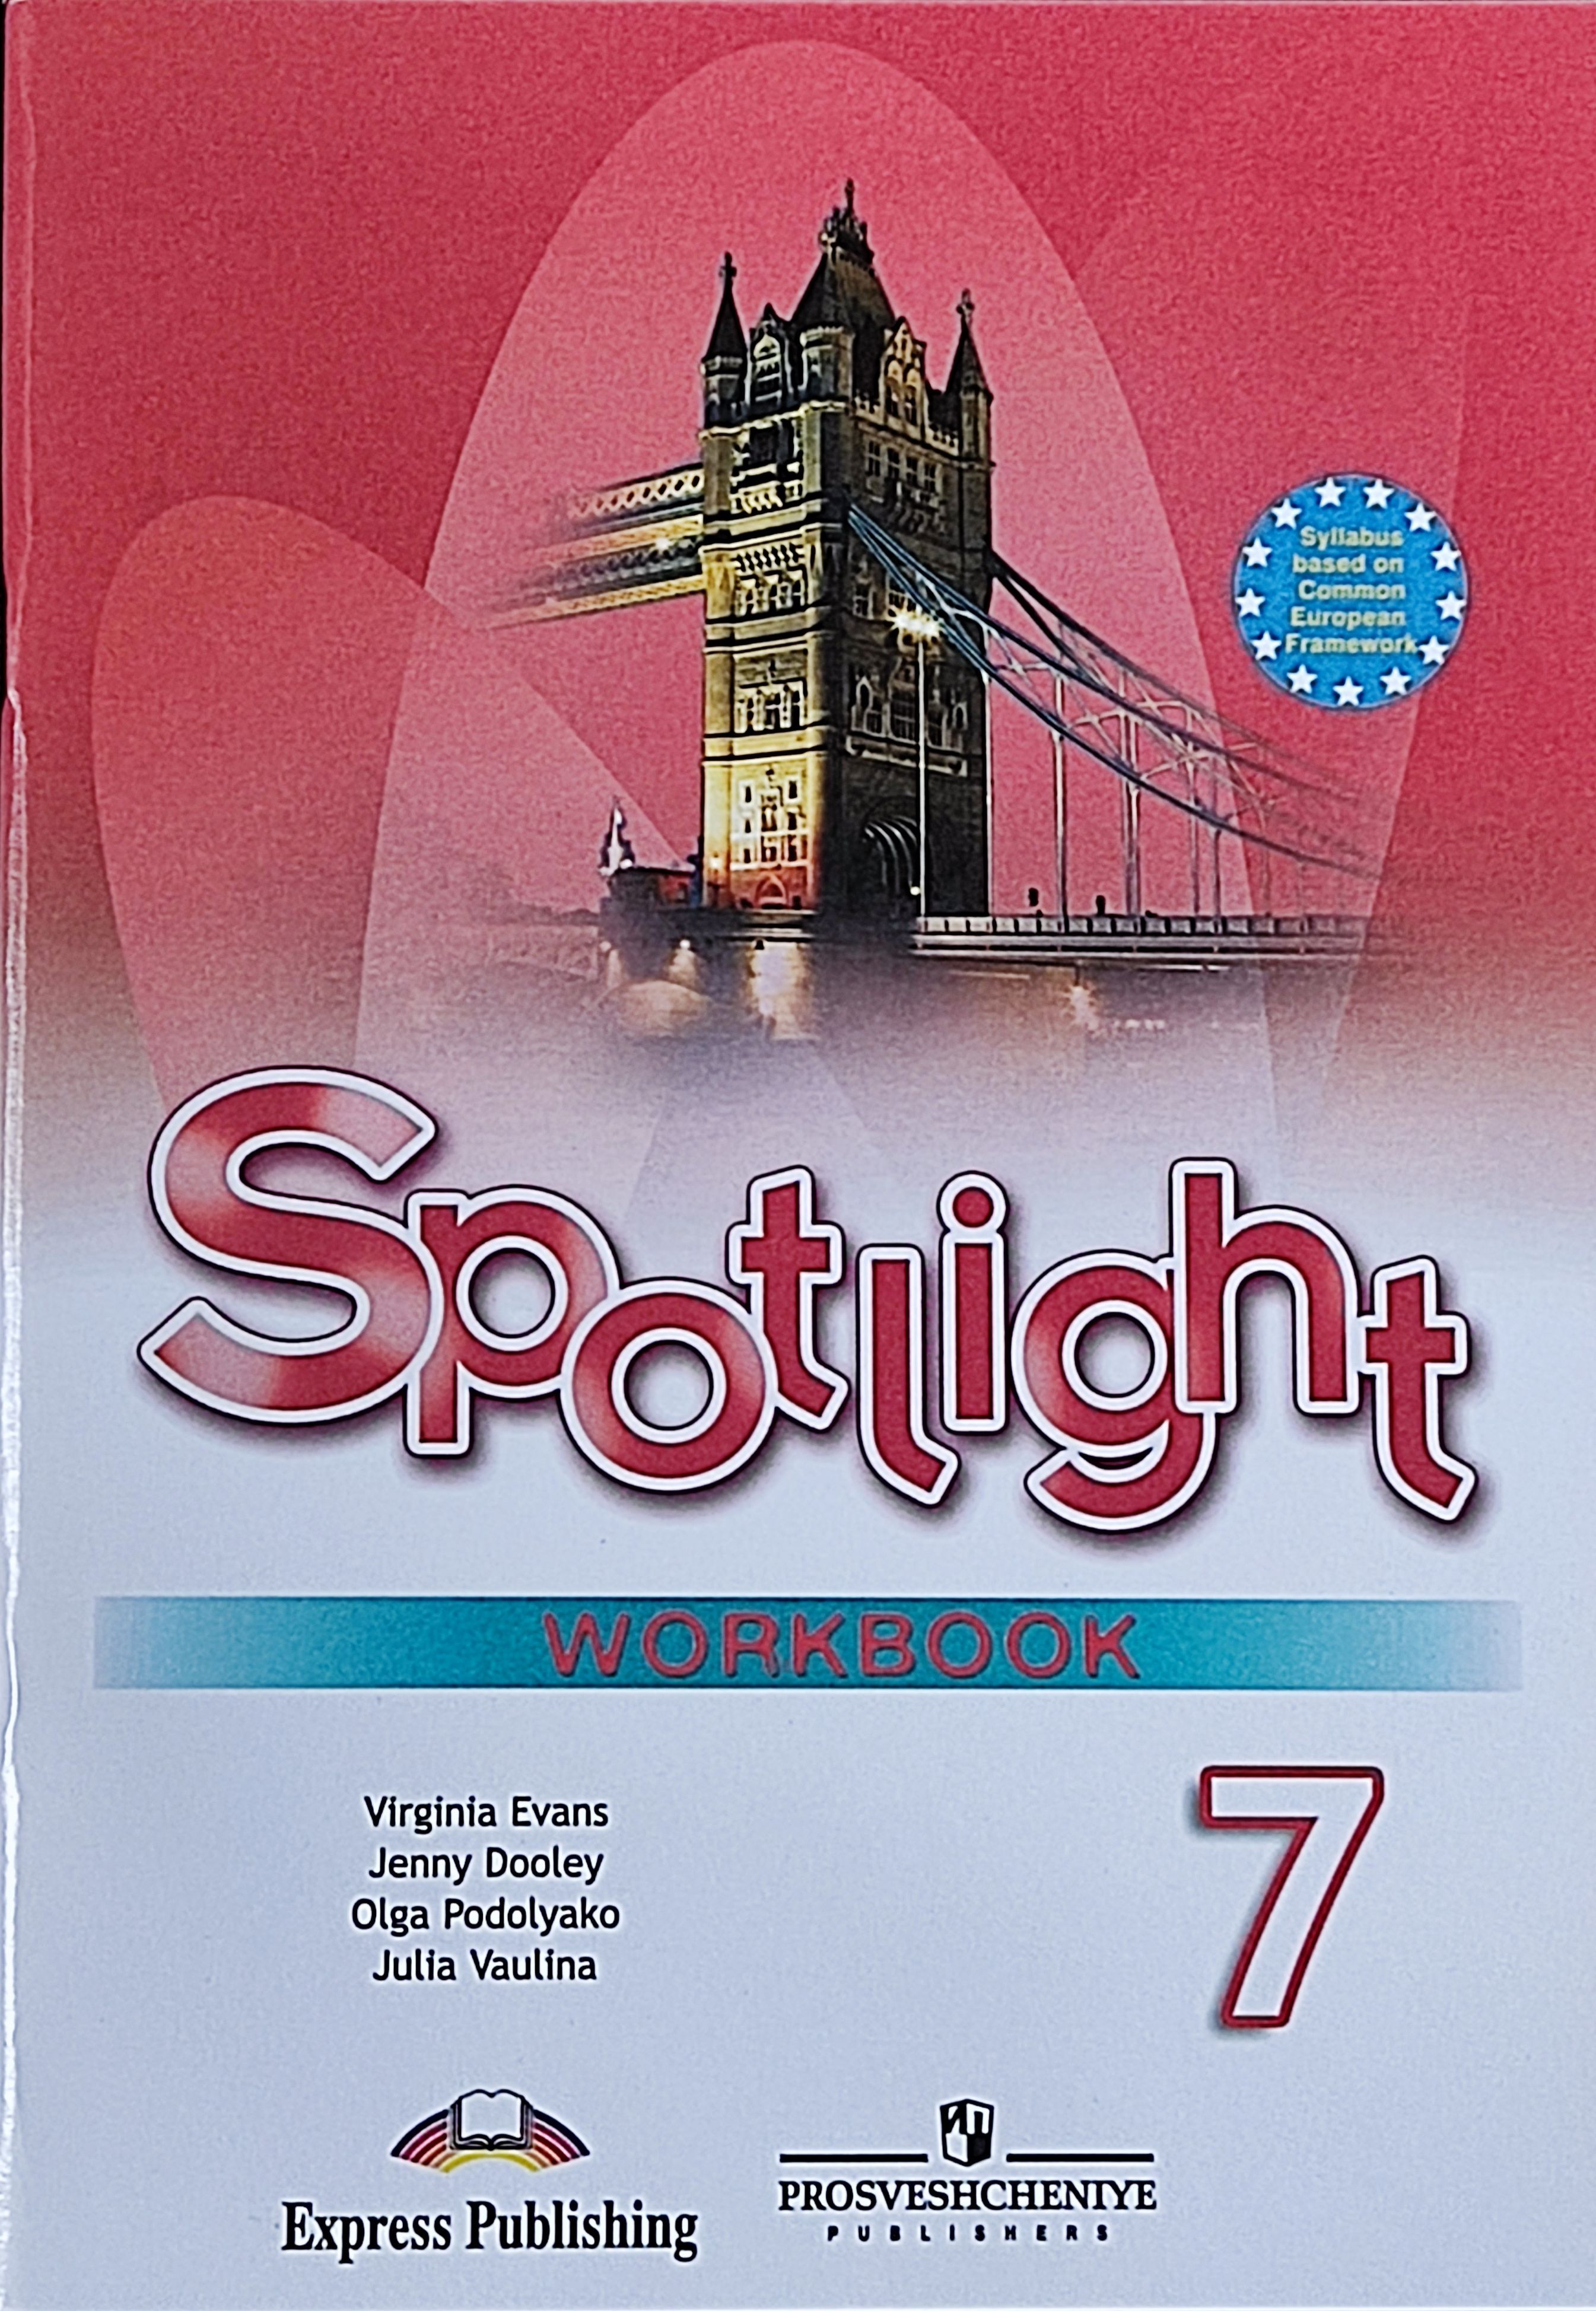 Английский в фокусе модуль 7 5 класс. Английский язык 5 класс Spotlight Workbook. Рабочая тетрадь по английскому языку 5 класс Spotlight. Spotlight 5 Workbook английский язык Эванс. Английский язык 9 класс (Spotlight) ваулина ю.е. рабоч тетрадь.